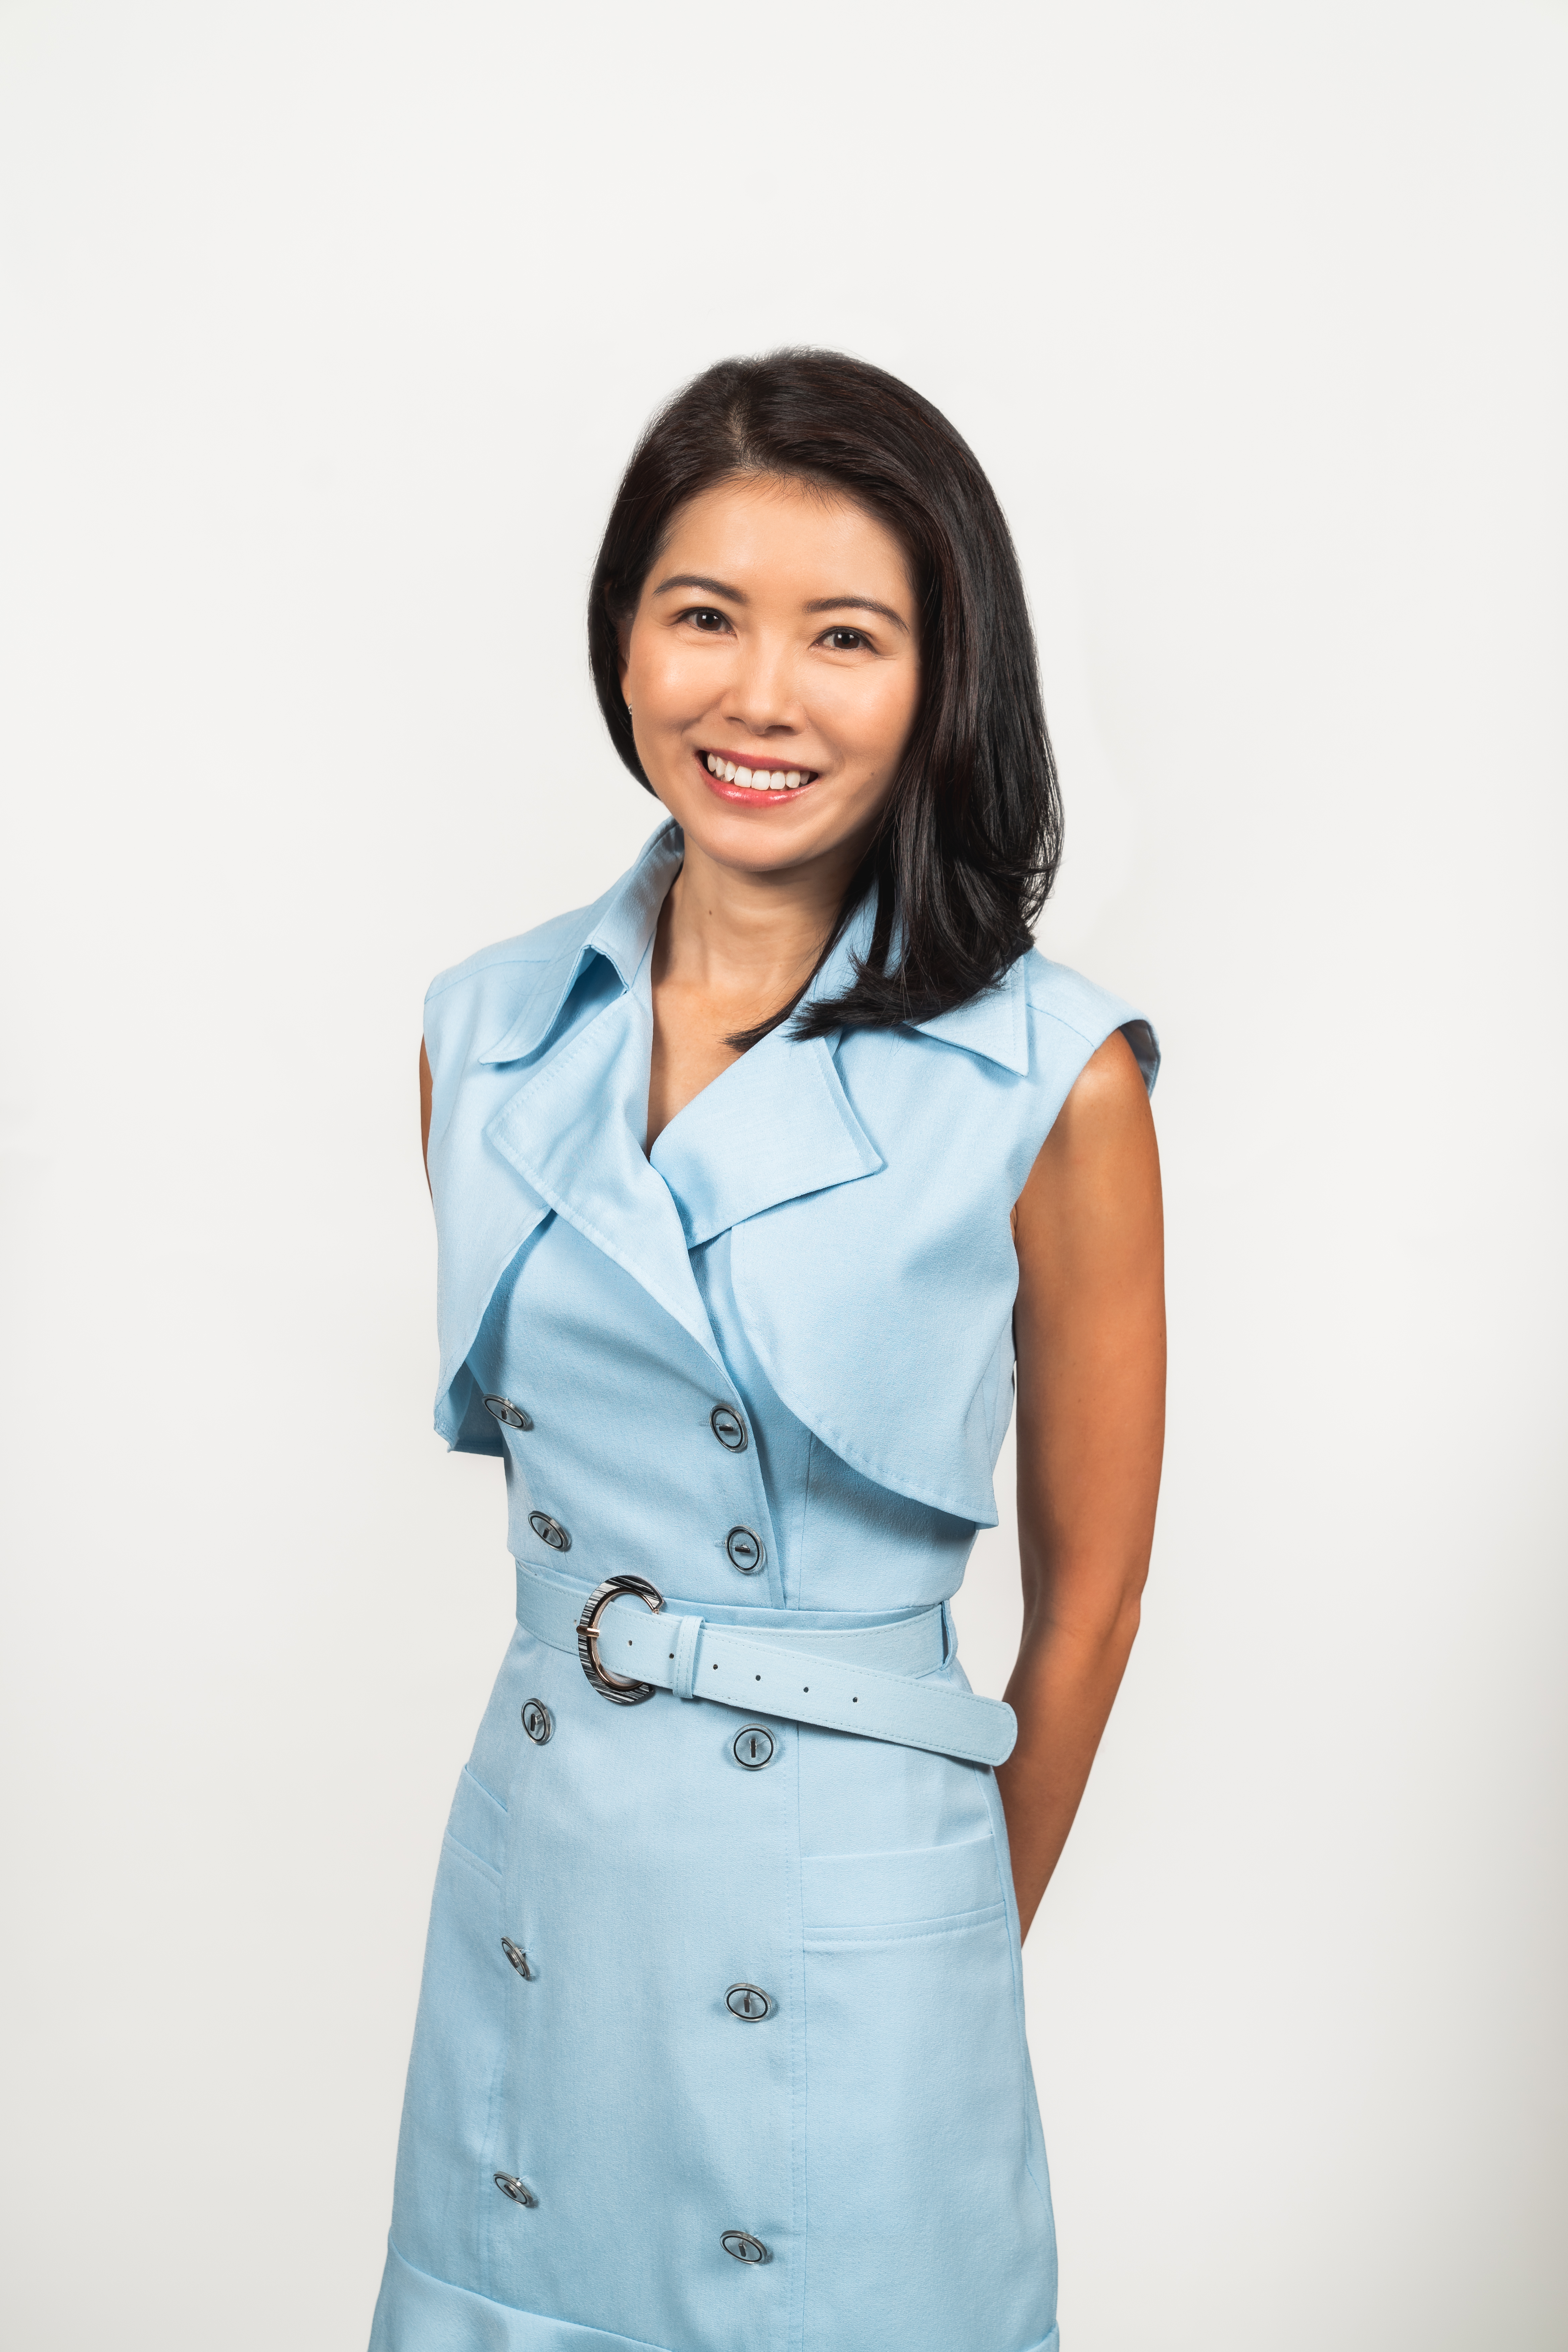 Melita Teo, CEO designate at AIA Philippines